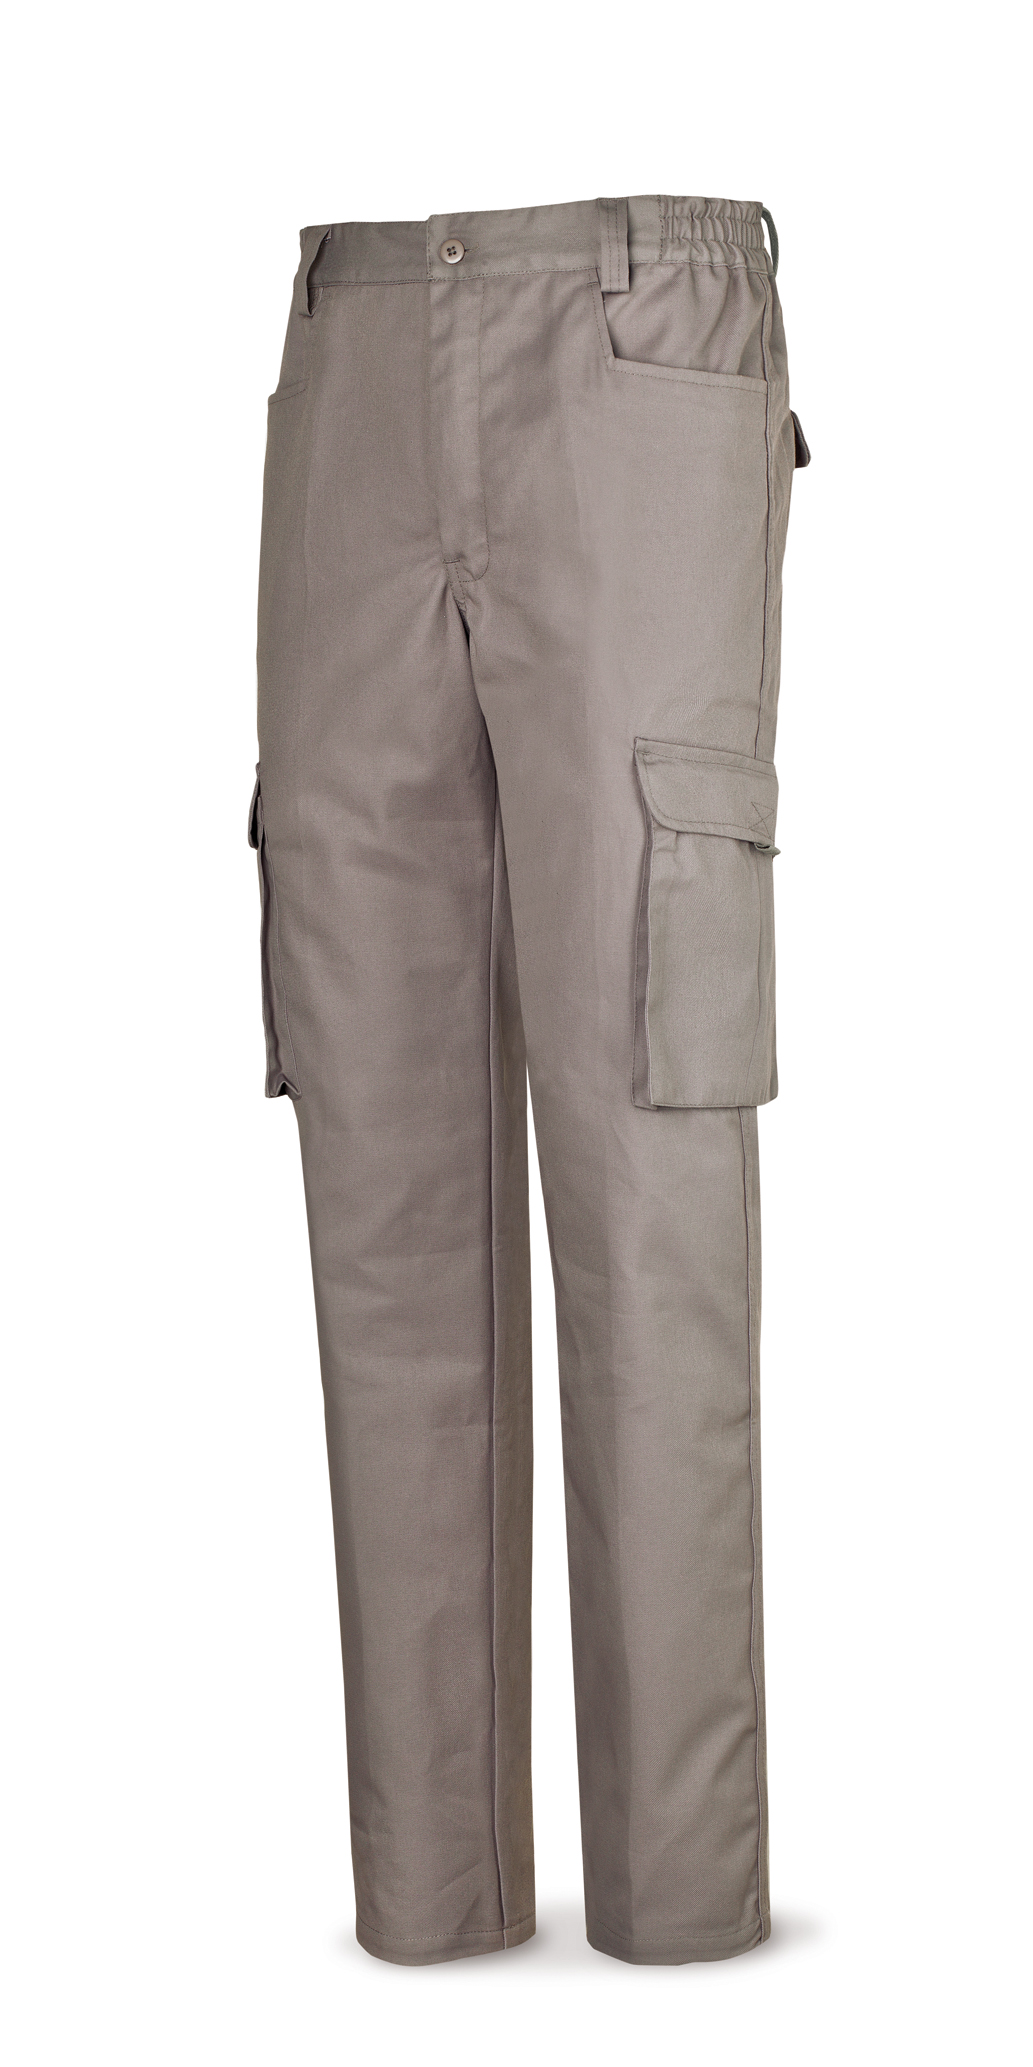 488-PTOPG Vestuario Laboral Top Series Calça cinza de algodão 245 g. Vários bolsos